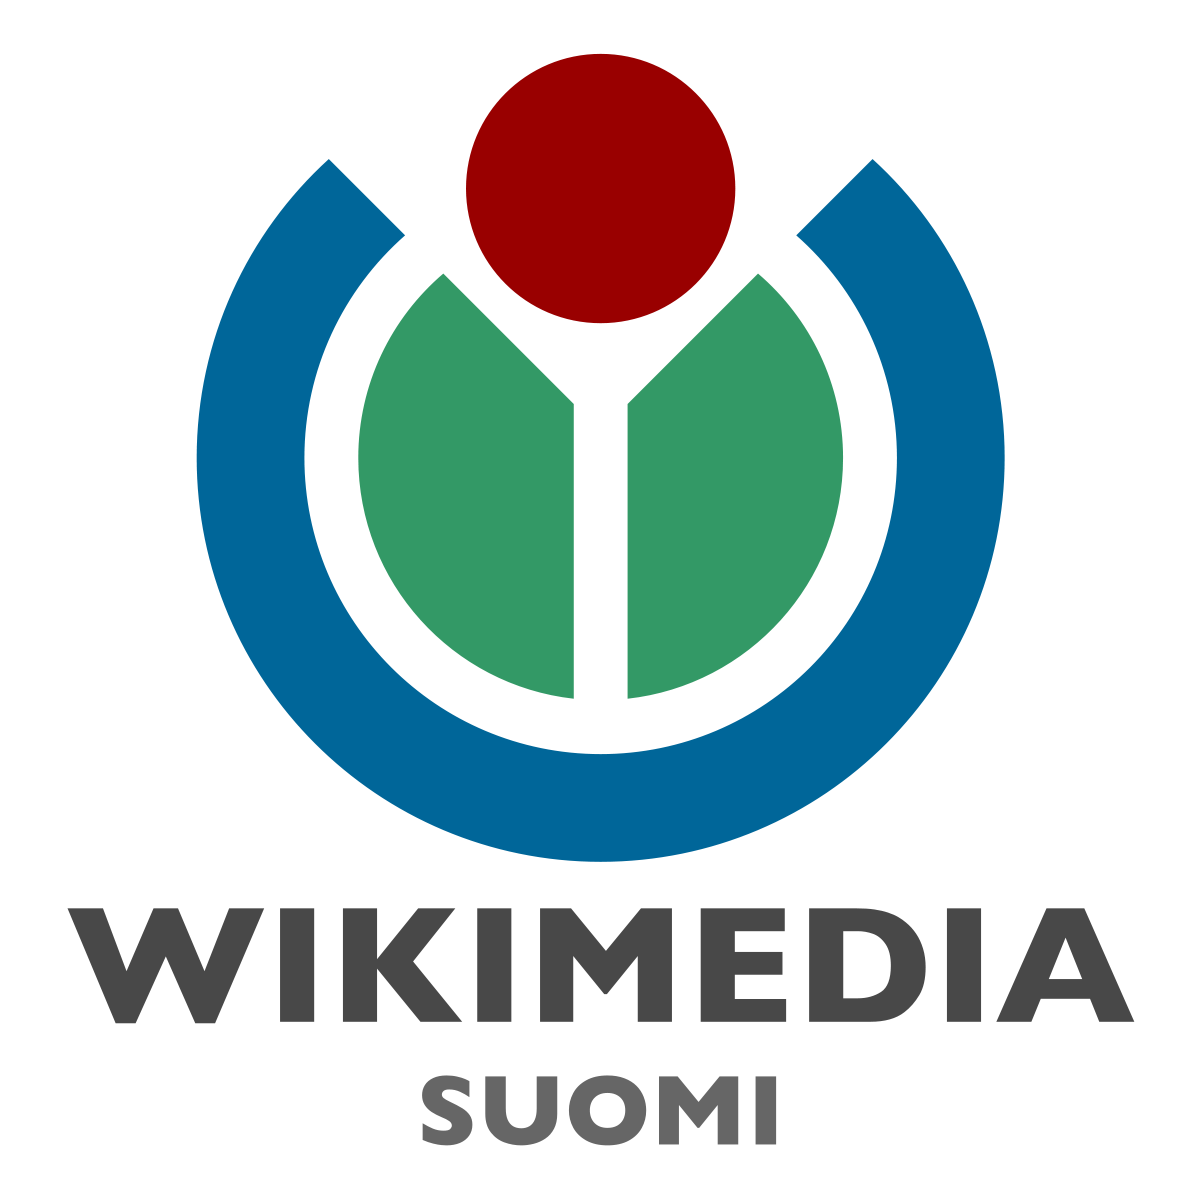 wikimedia suomi